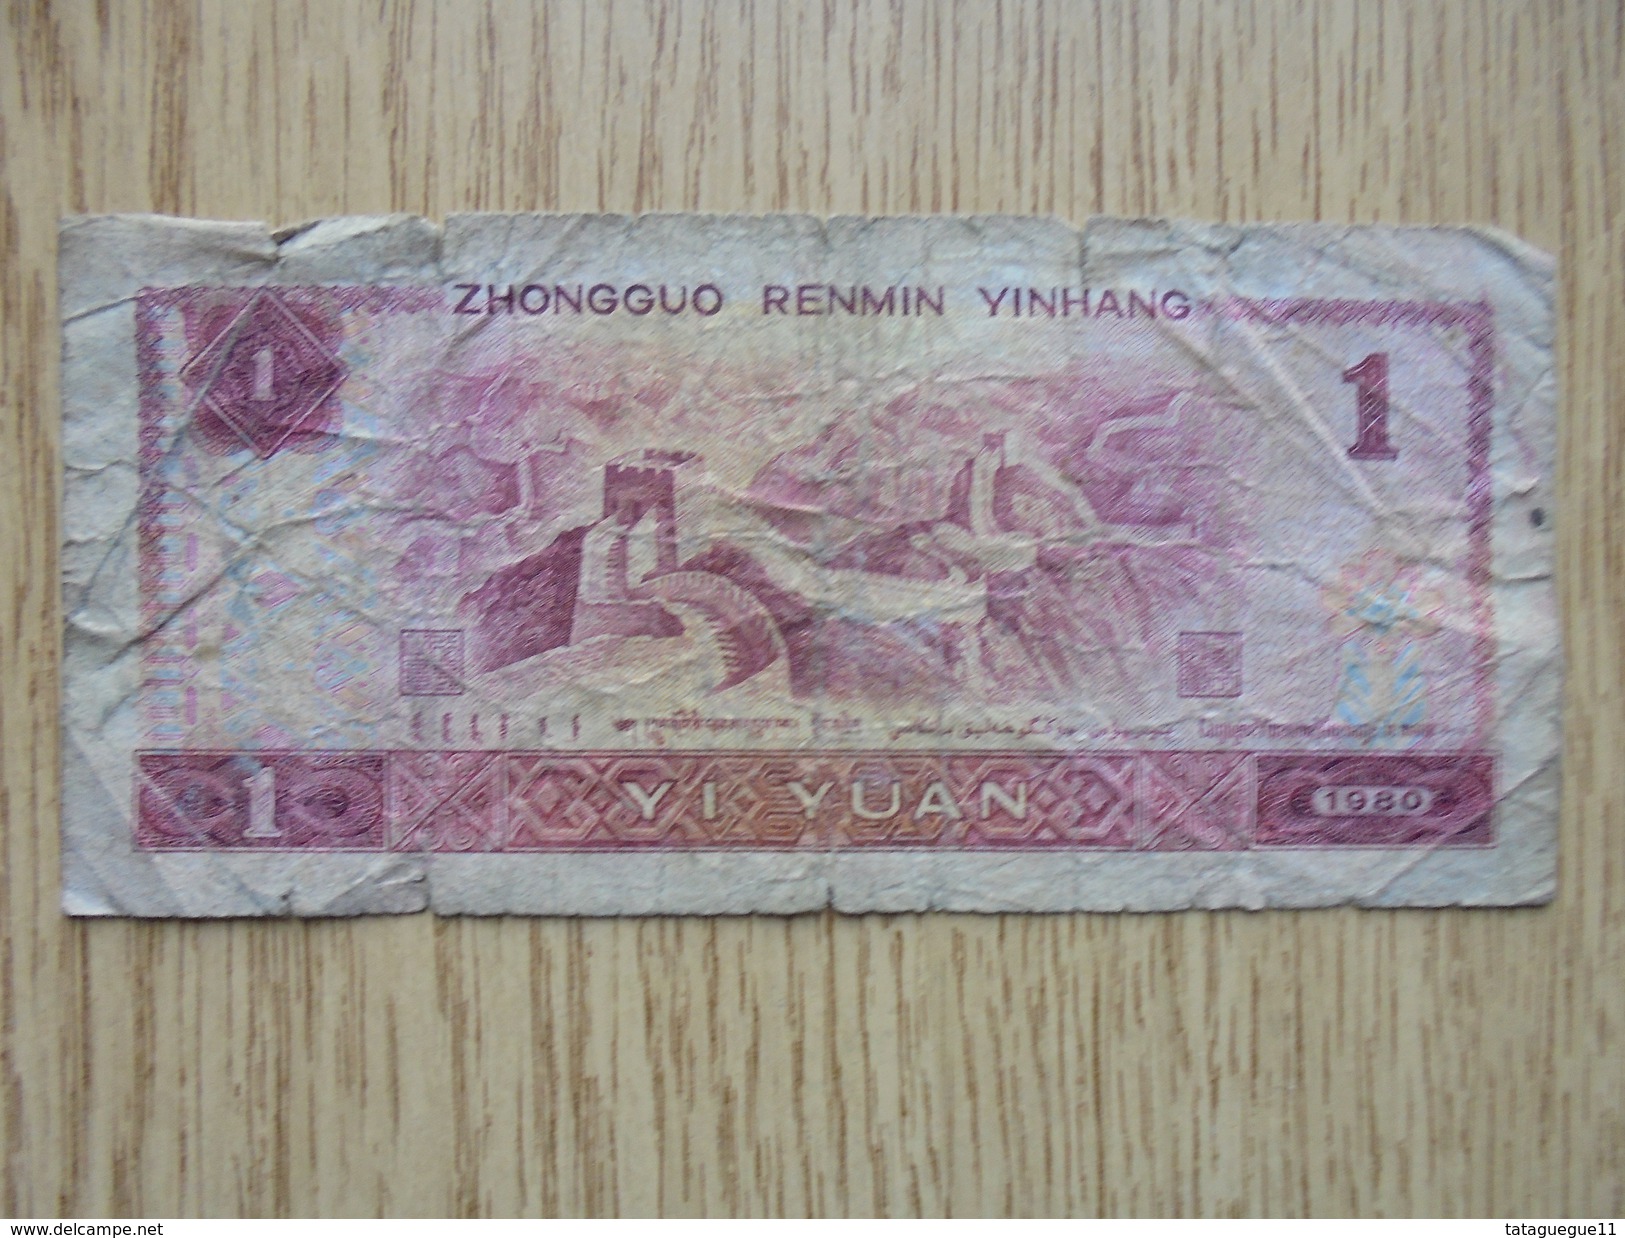 Ancien - Billet De Banque - ZHONGGUO RENMIN YINHANG 1 YI YUAN - 1980 - Autres - Asie